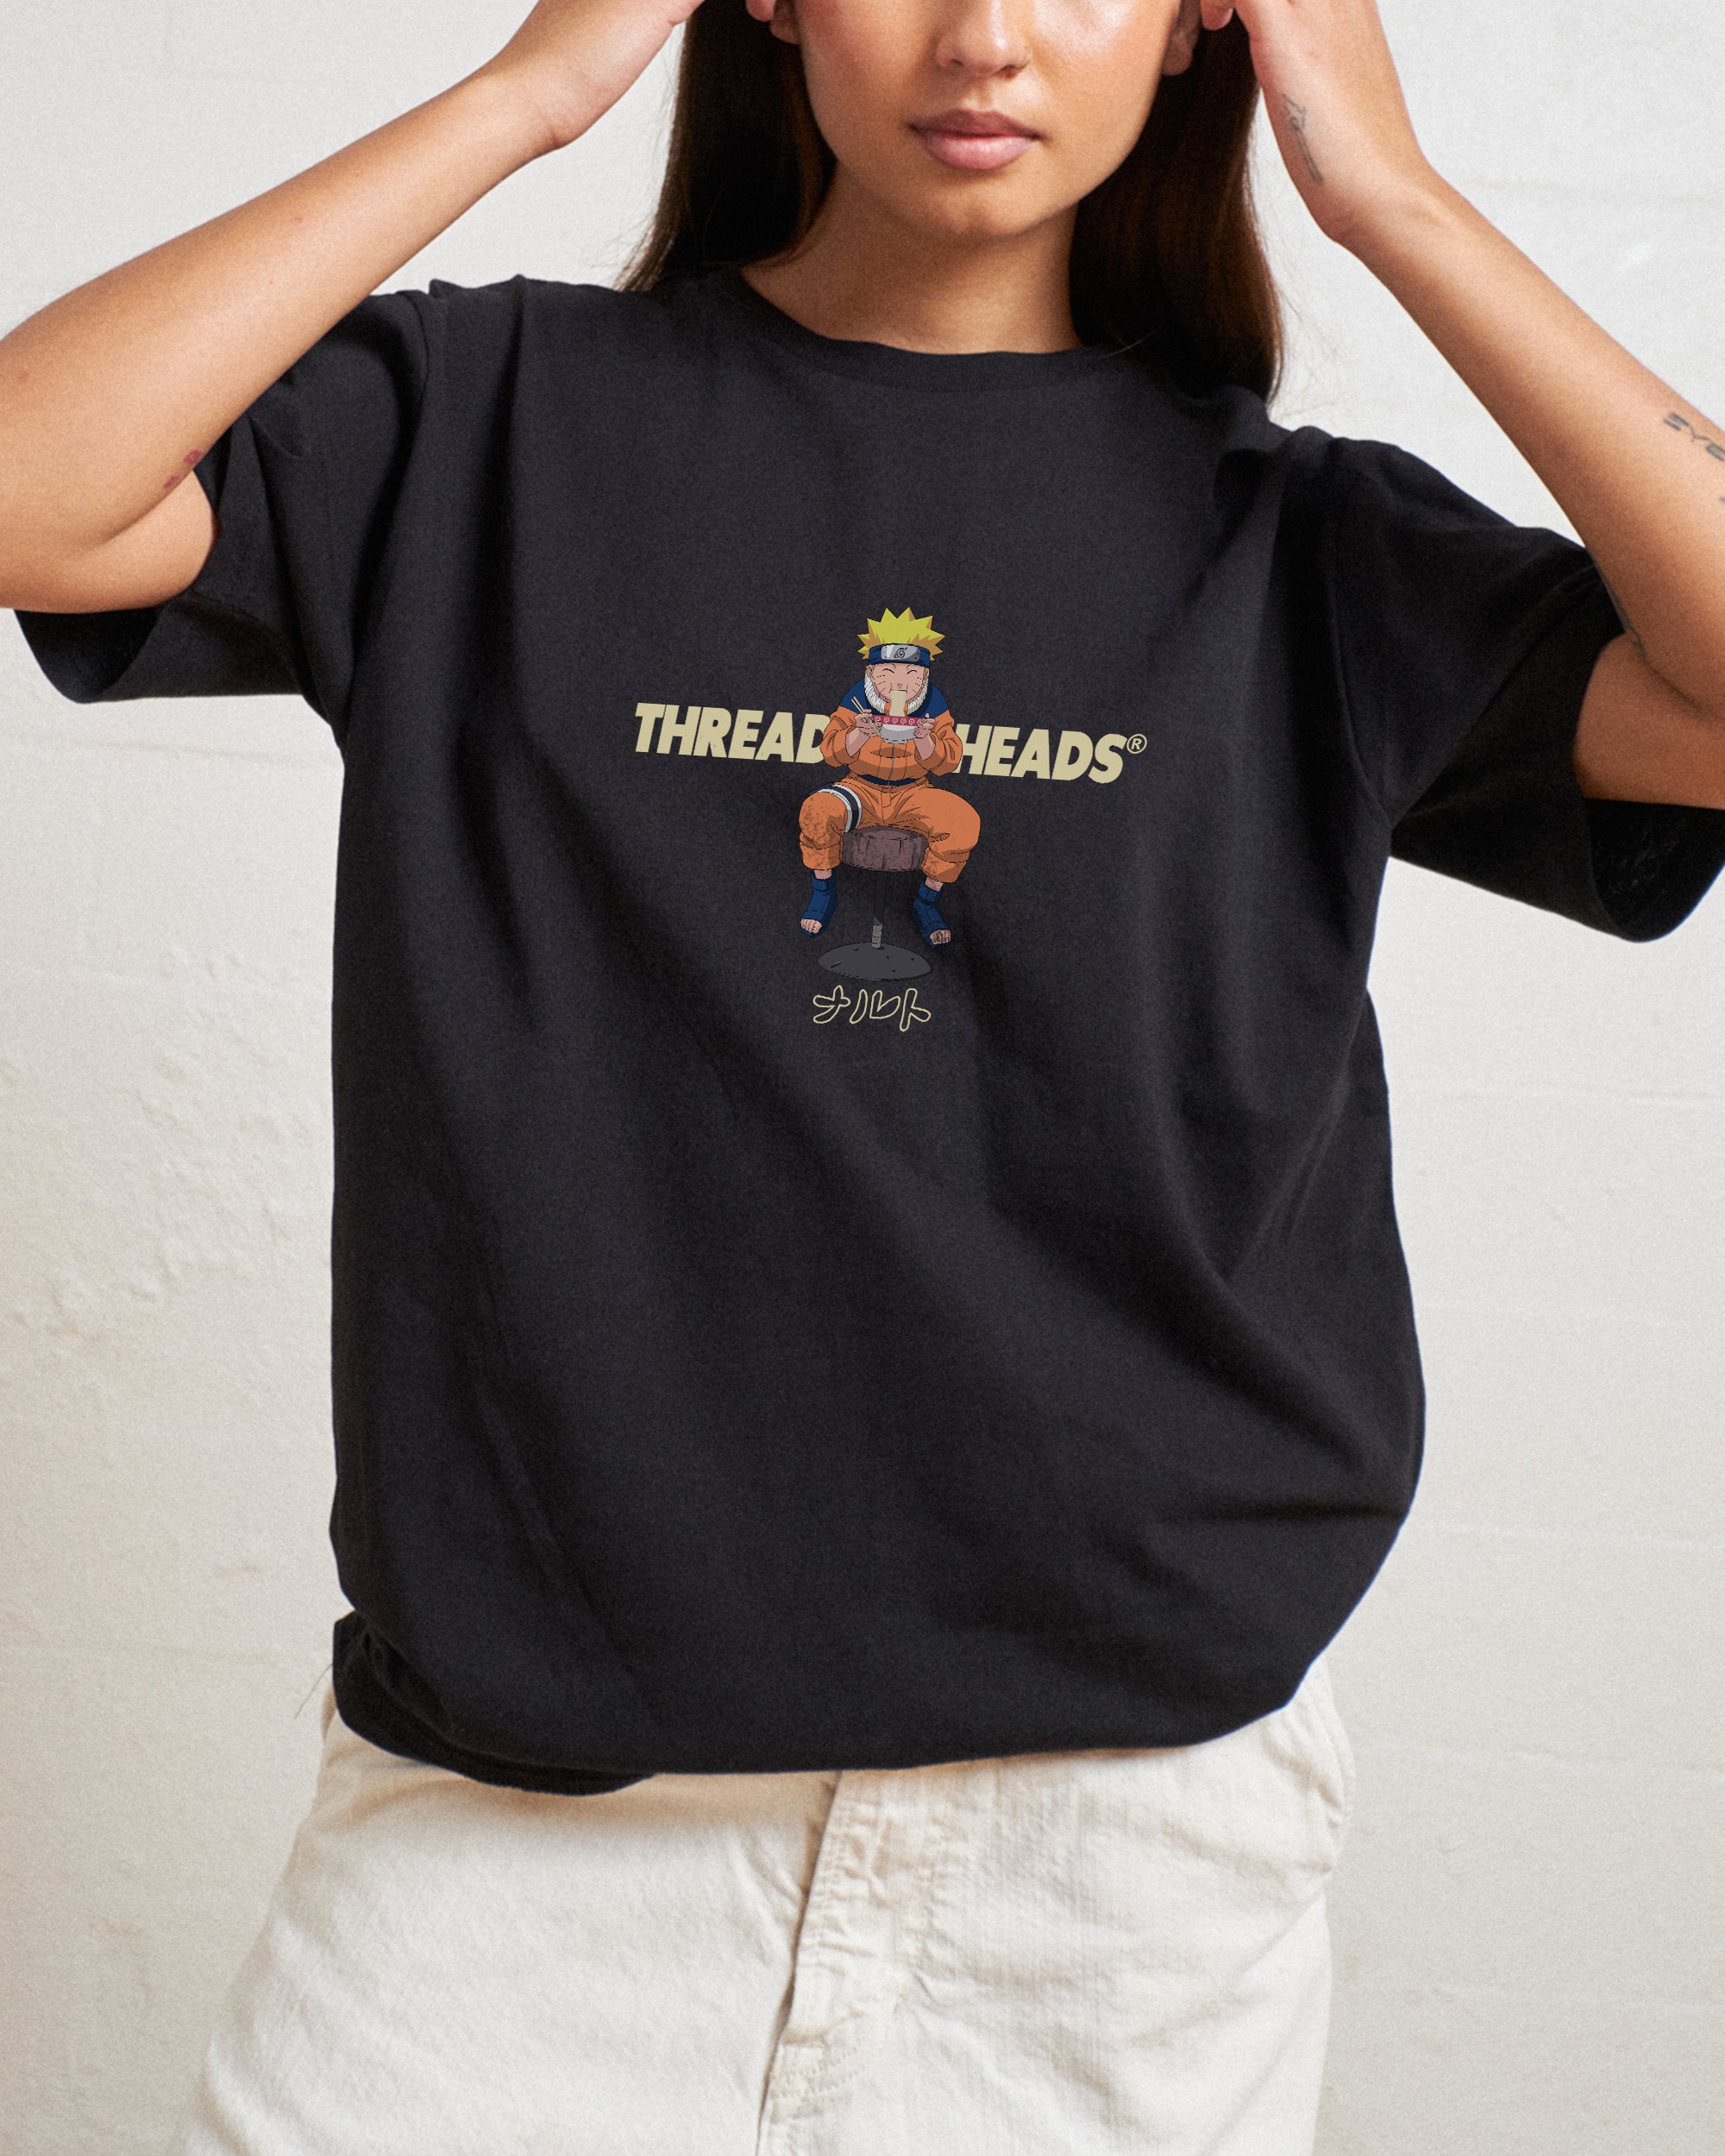 Naruto Ramen T-Shirt Australia Online